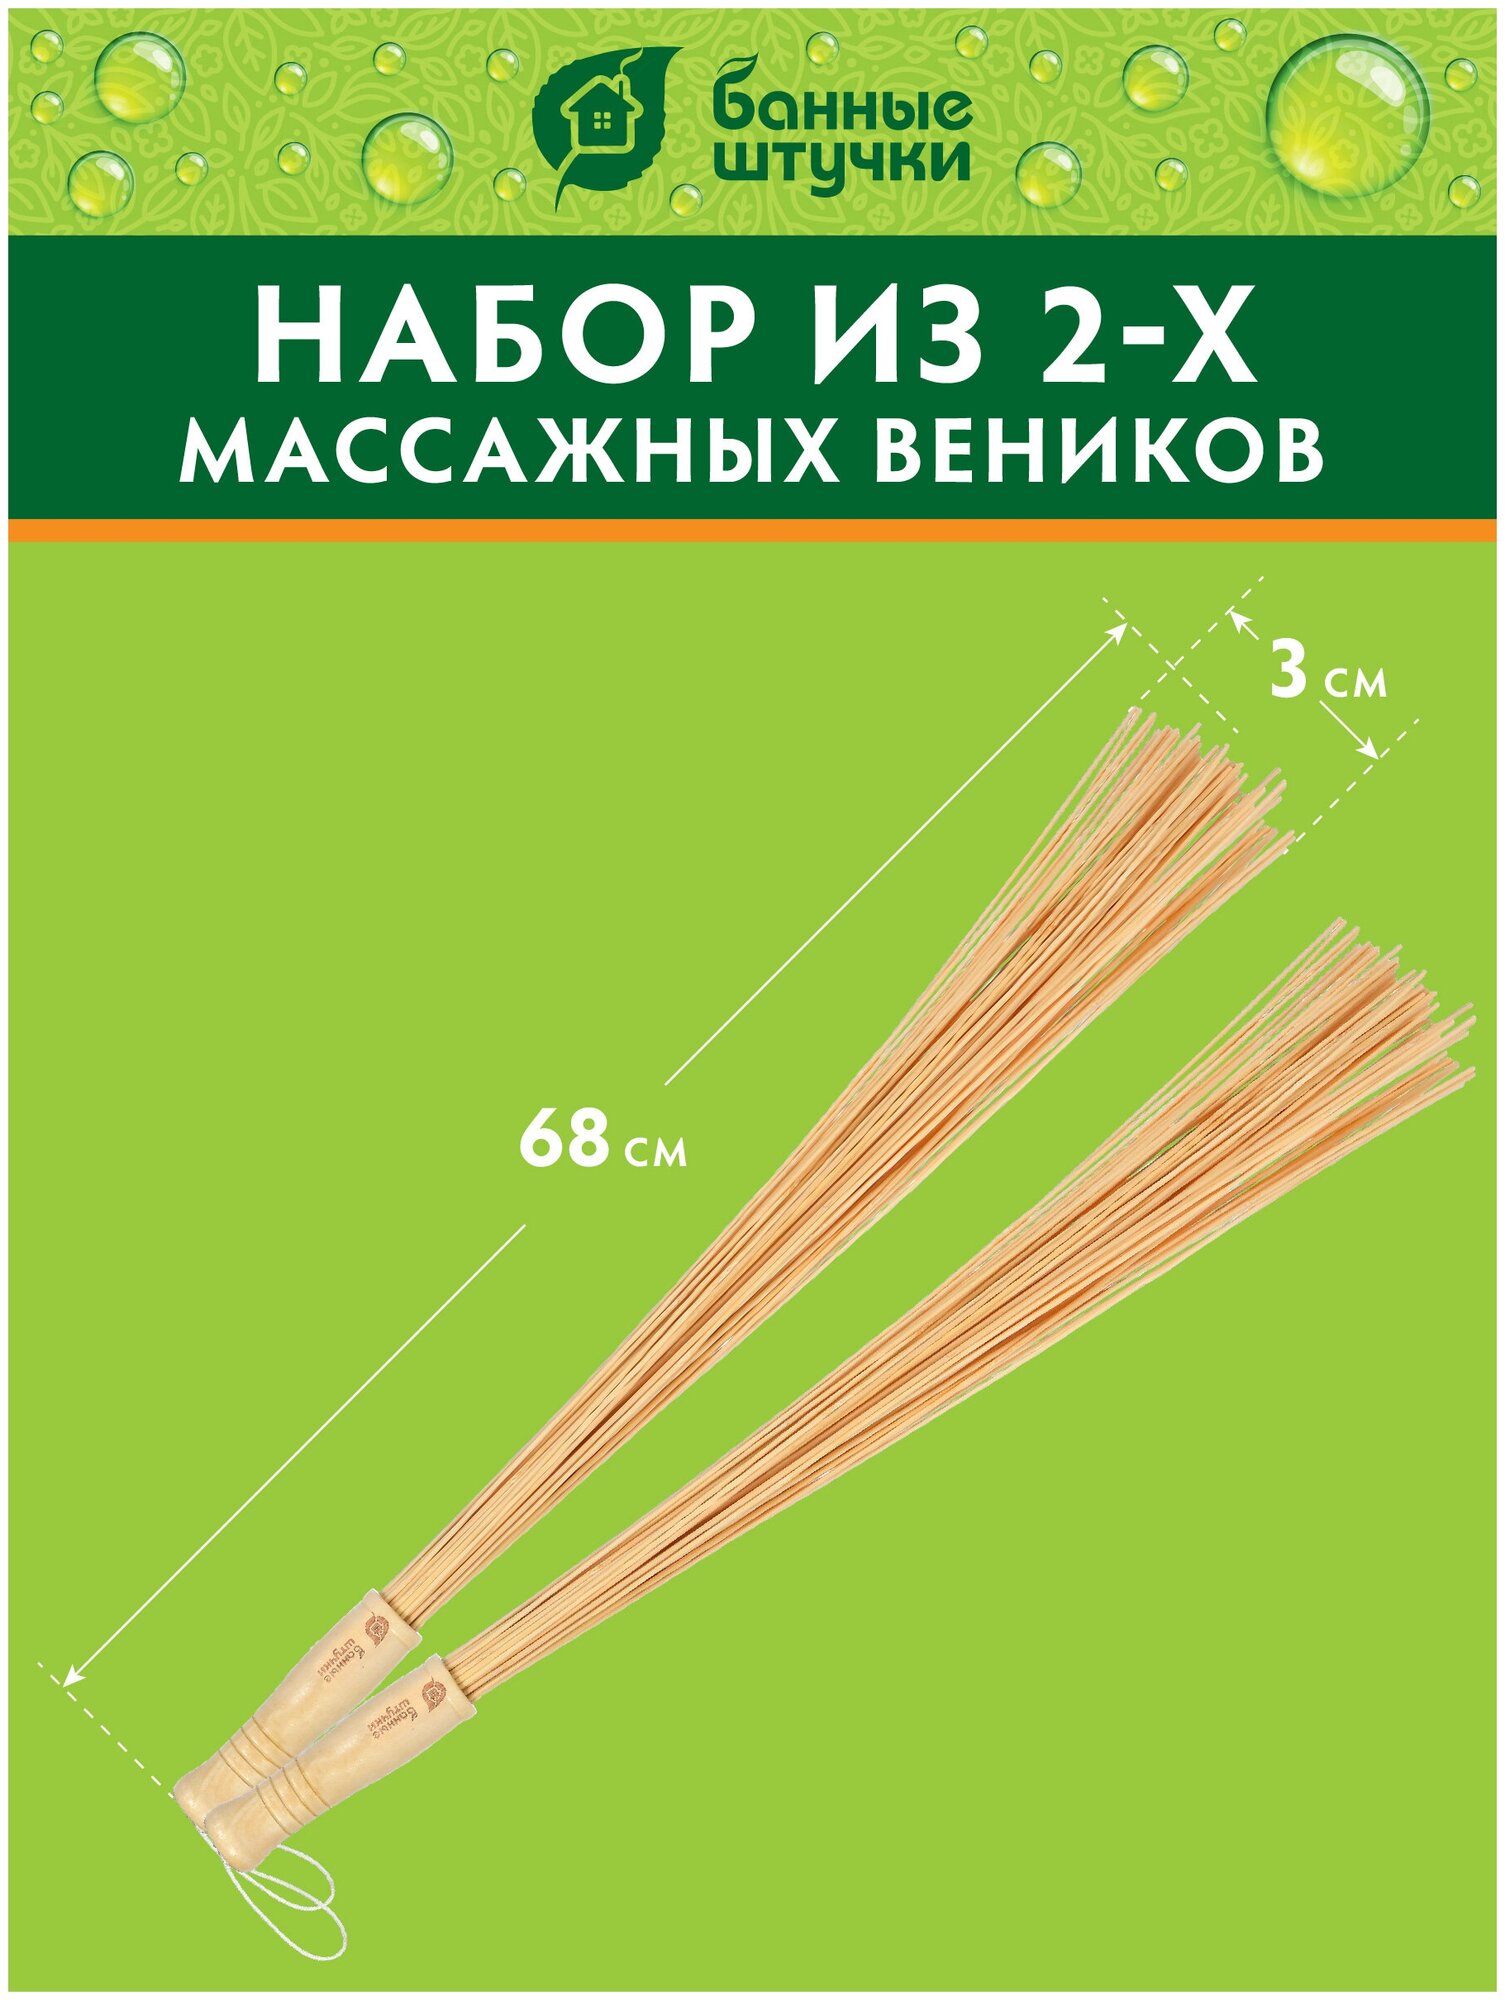 Набор из 2 веников массажных бамбуковых для бани и сауны "Банные штучки"